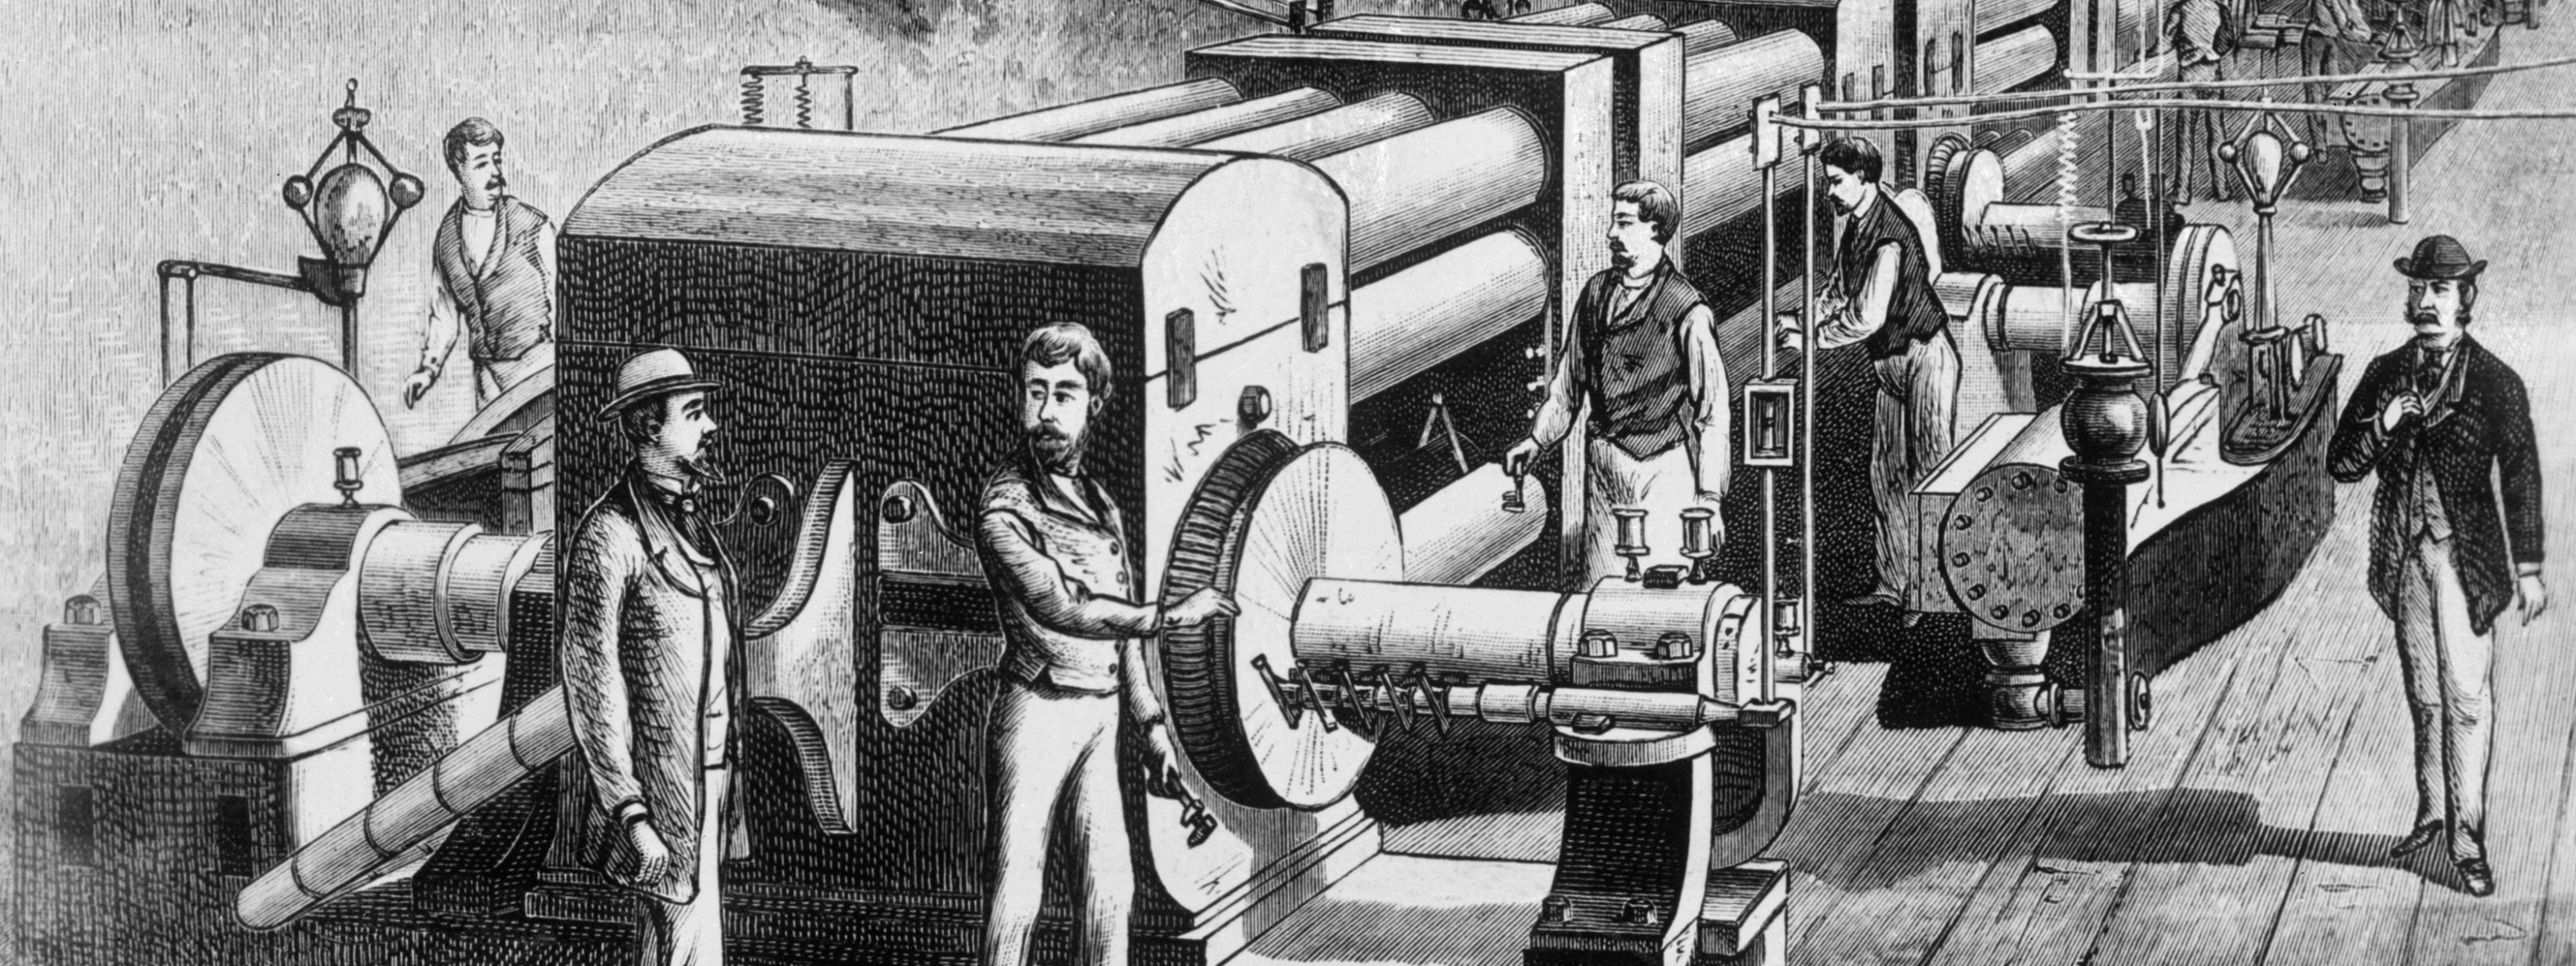 Первая техническая революция. Промышленная революция в Англии 19 век. Промышленный переворот в Германии. Промышленная революция 20.век. Научно-техническая революция 19 века.